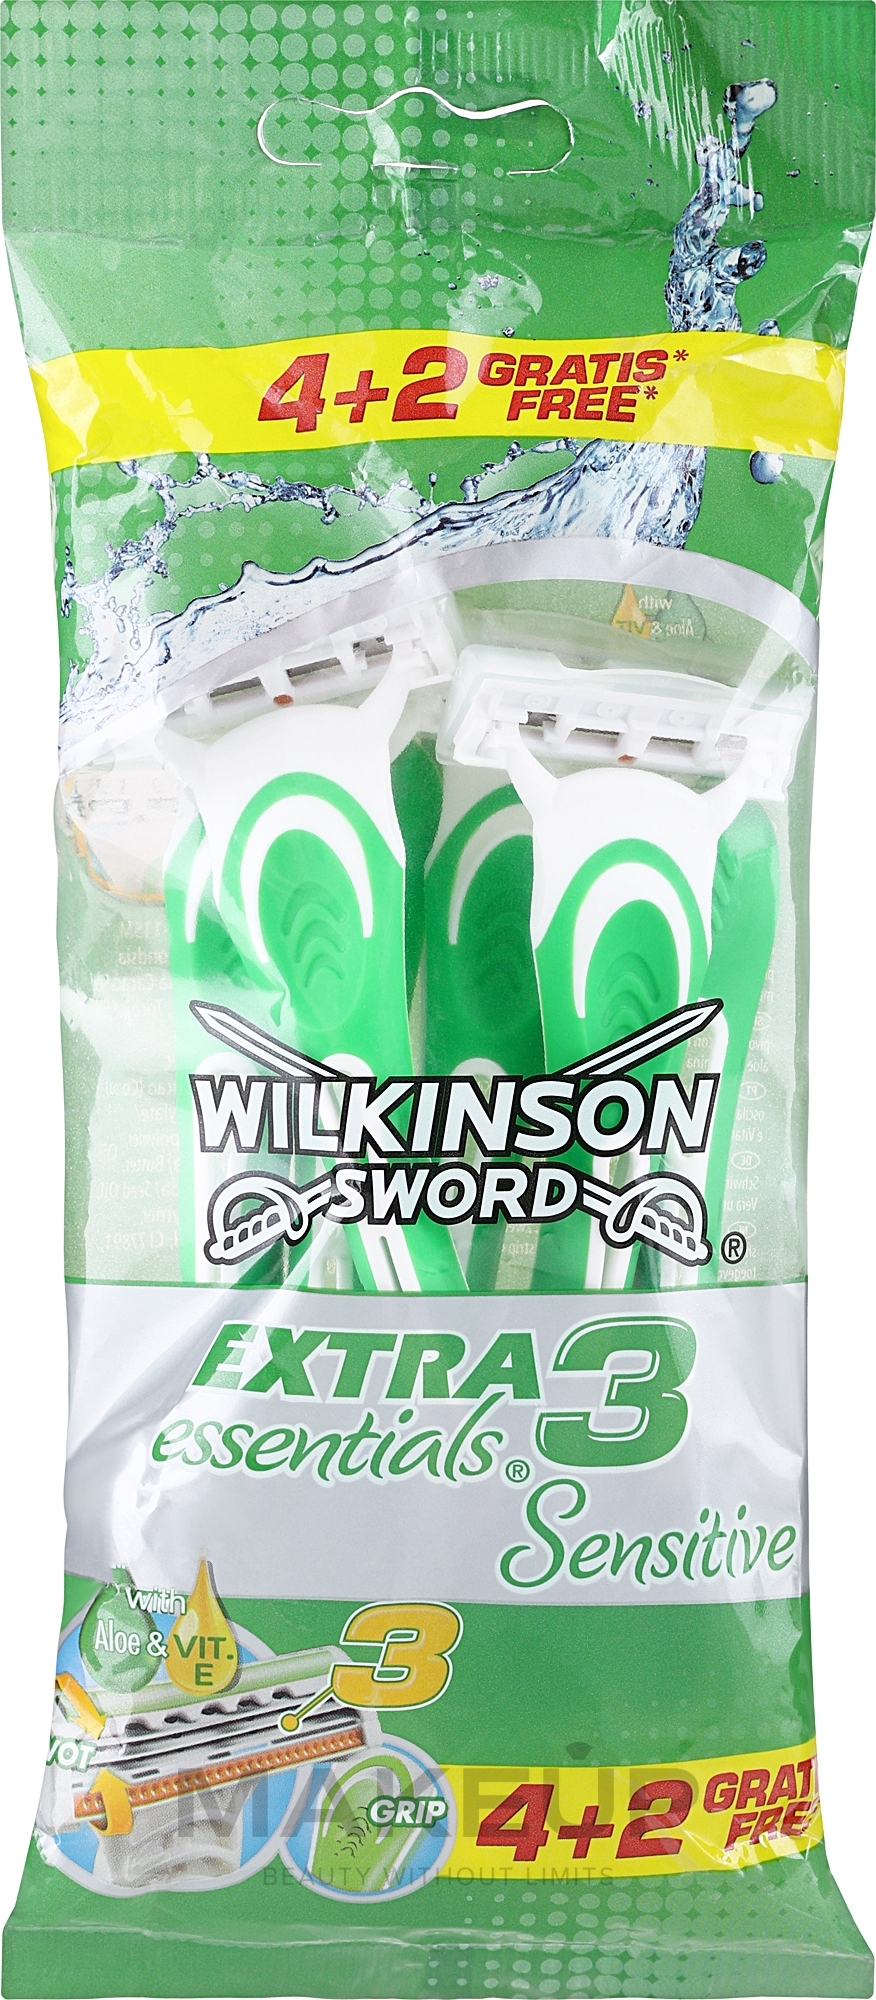 Maszynki jednorazowe, 6 szt. - Wilkinson Sword Extra 3 Sensitive — Zdjęcie 6 szt.